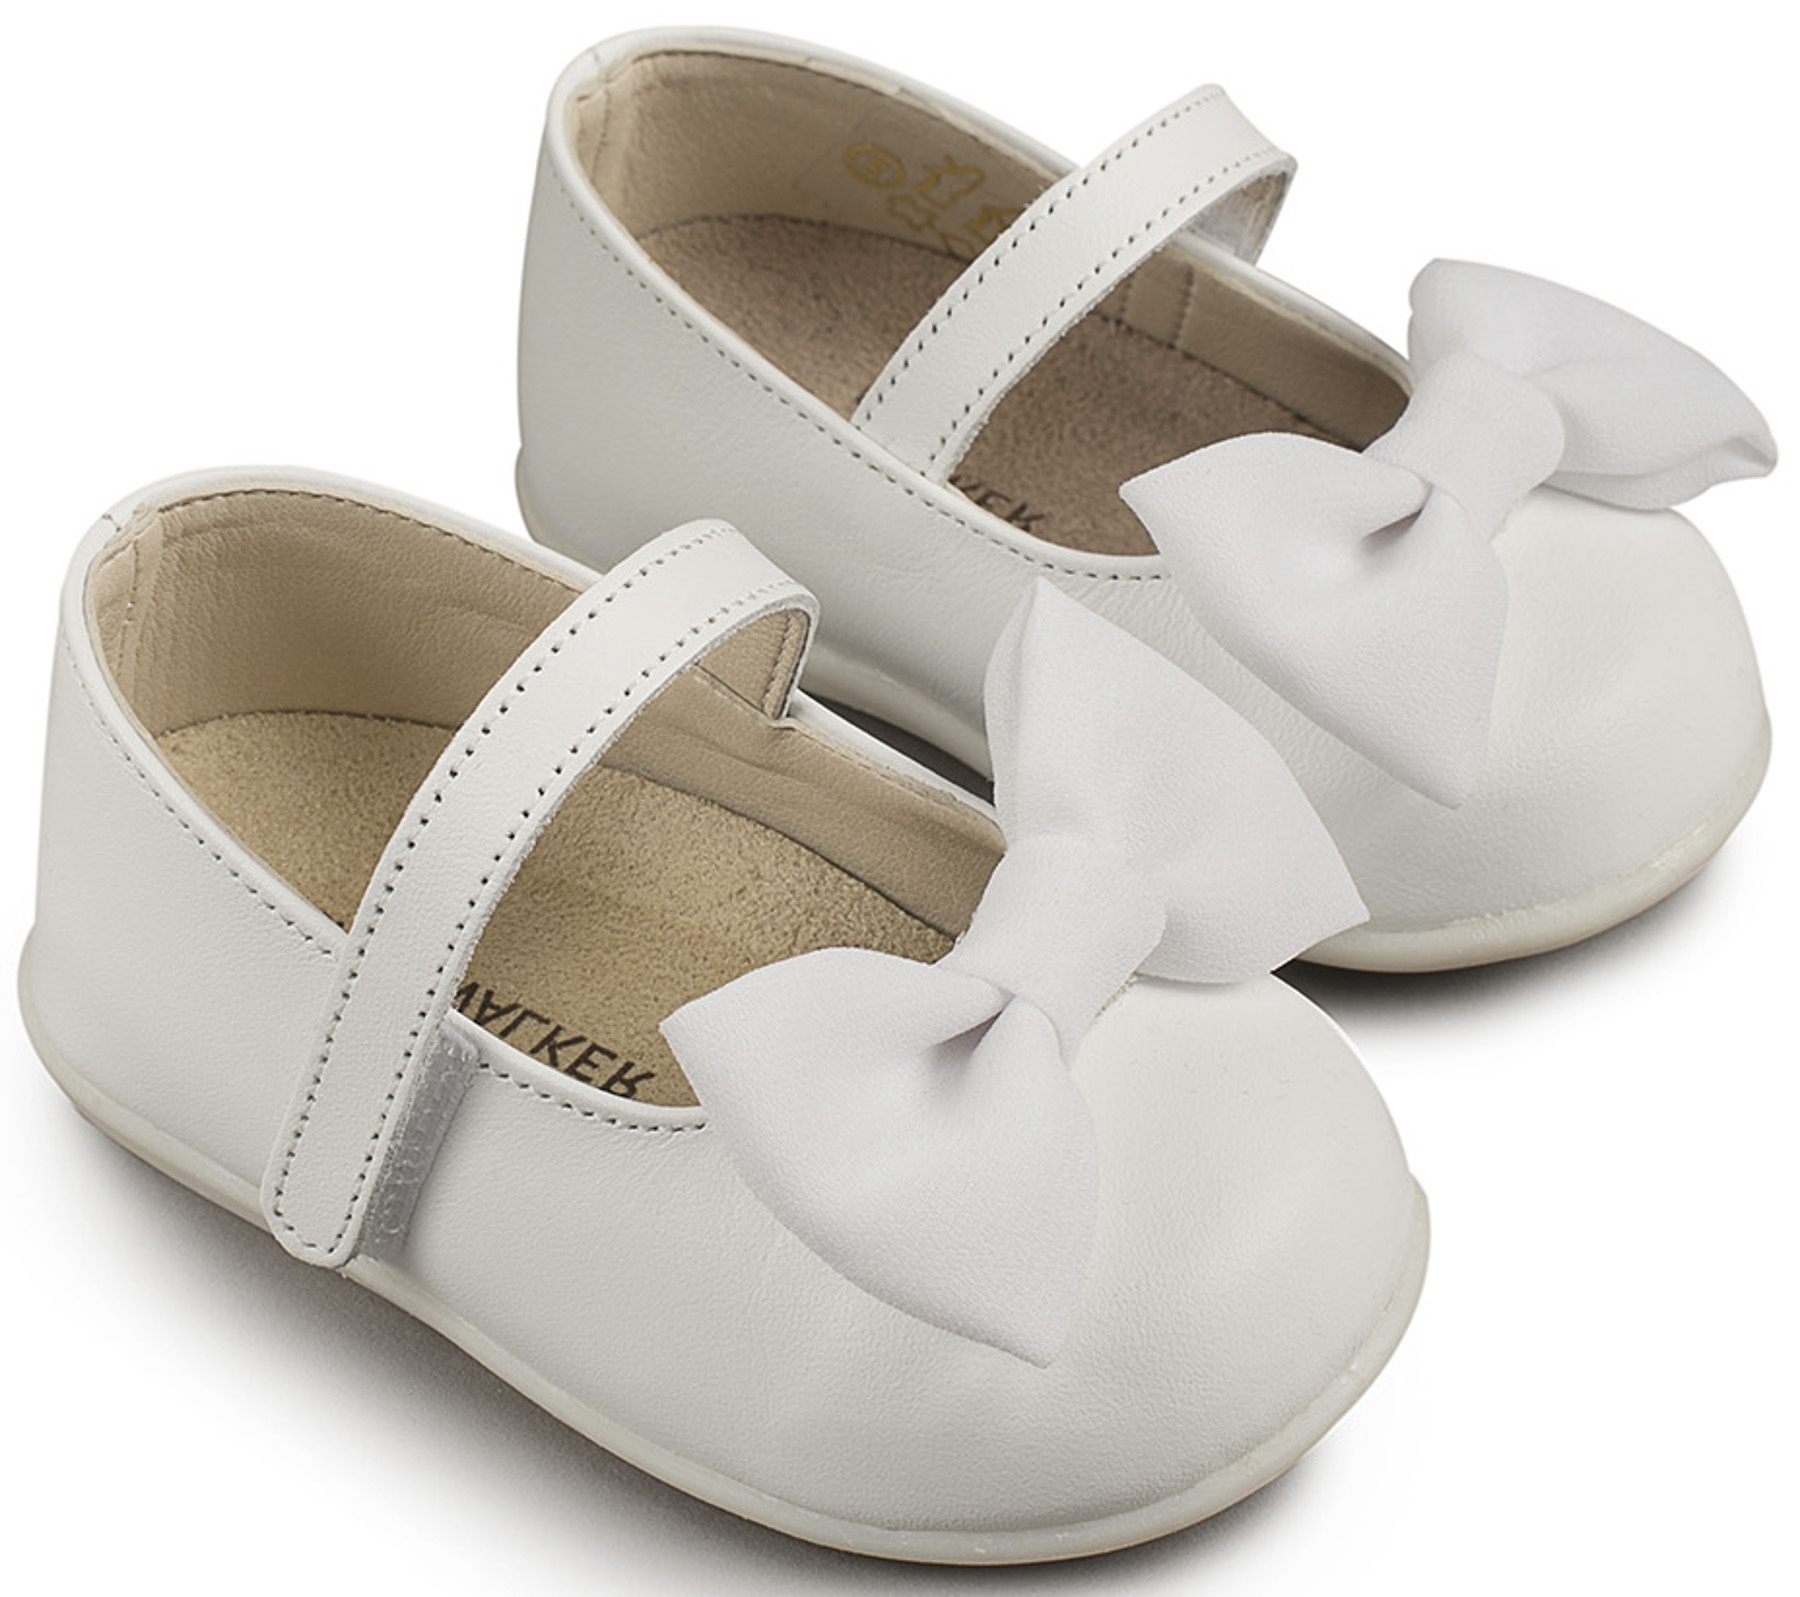 βαπτιστικό παπούτσι για κορίτσι φίογκος λευκό : 1